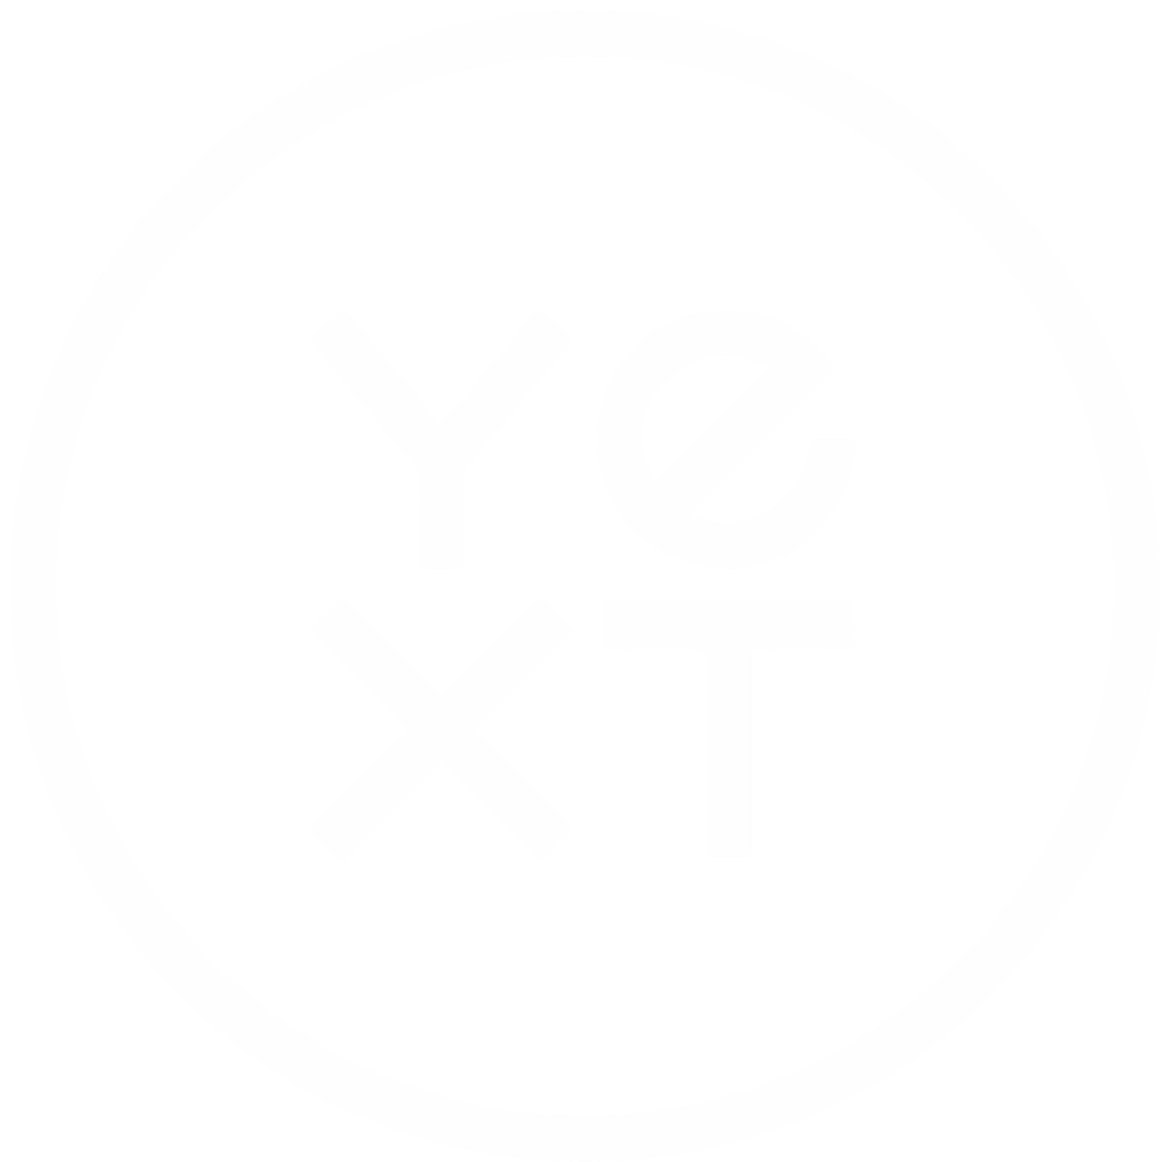 yext ', opens in new window'